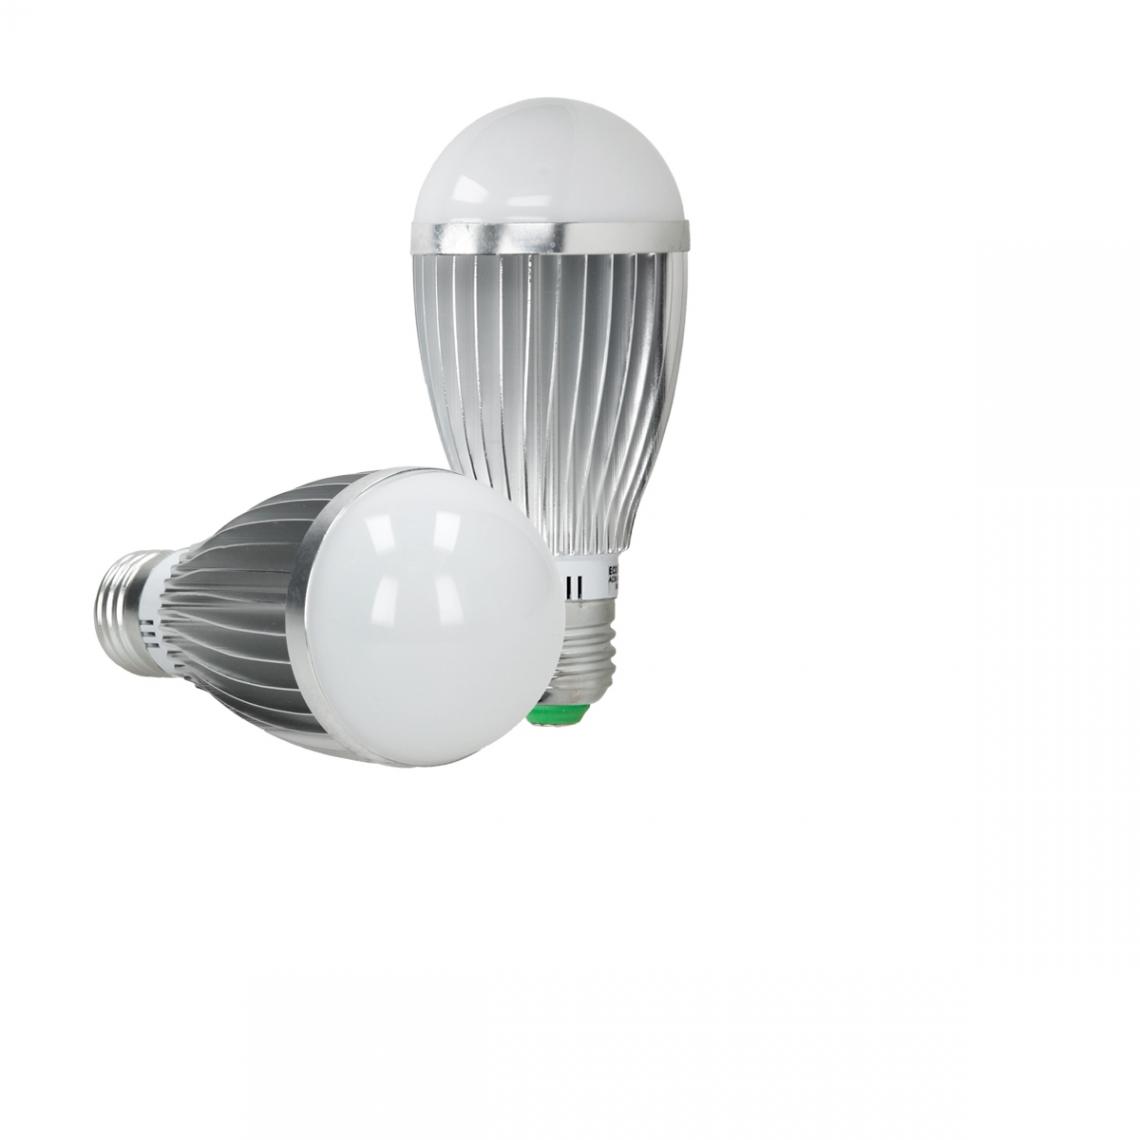 Ecd Germany - Ampoule LED E27 9 Watt RGB - Ampoules LED